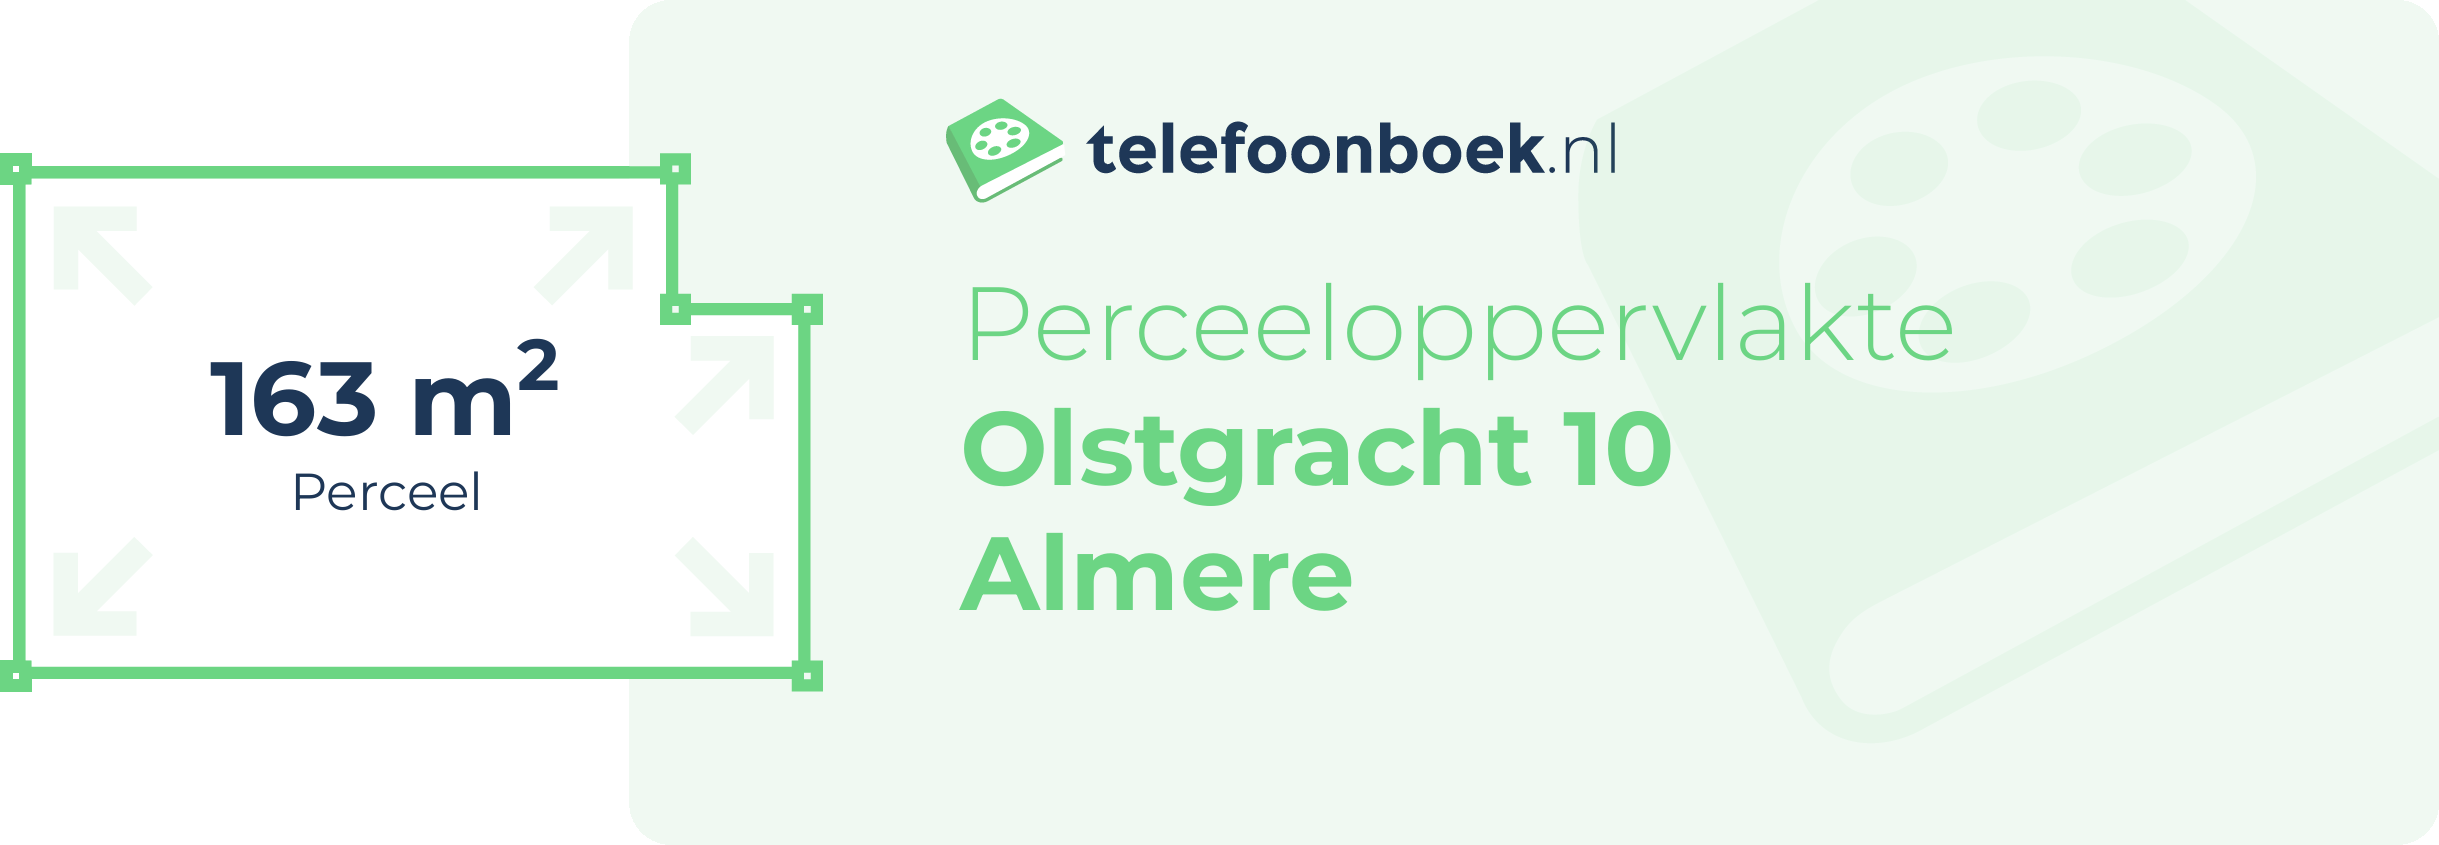 Perceeloppervlakte Olstgracht 10 Almere